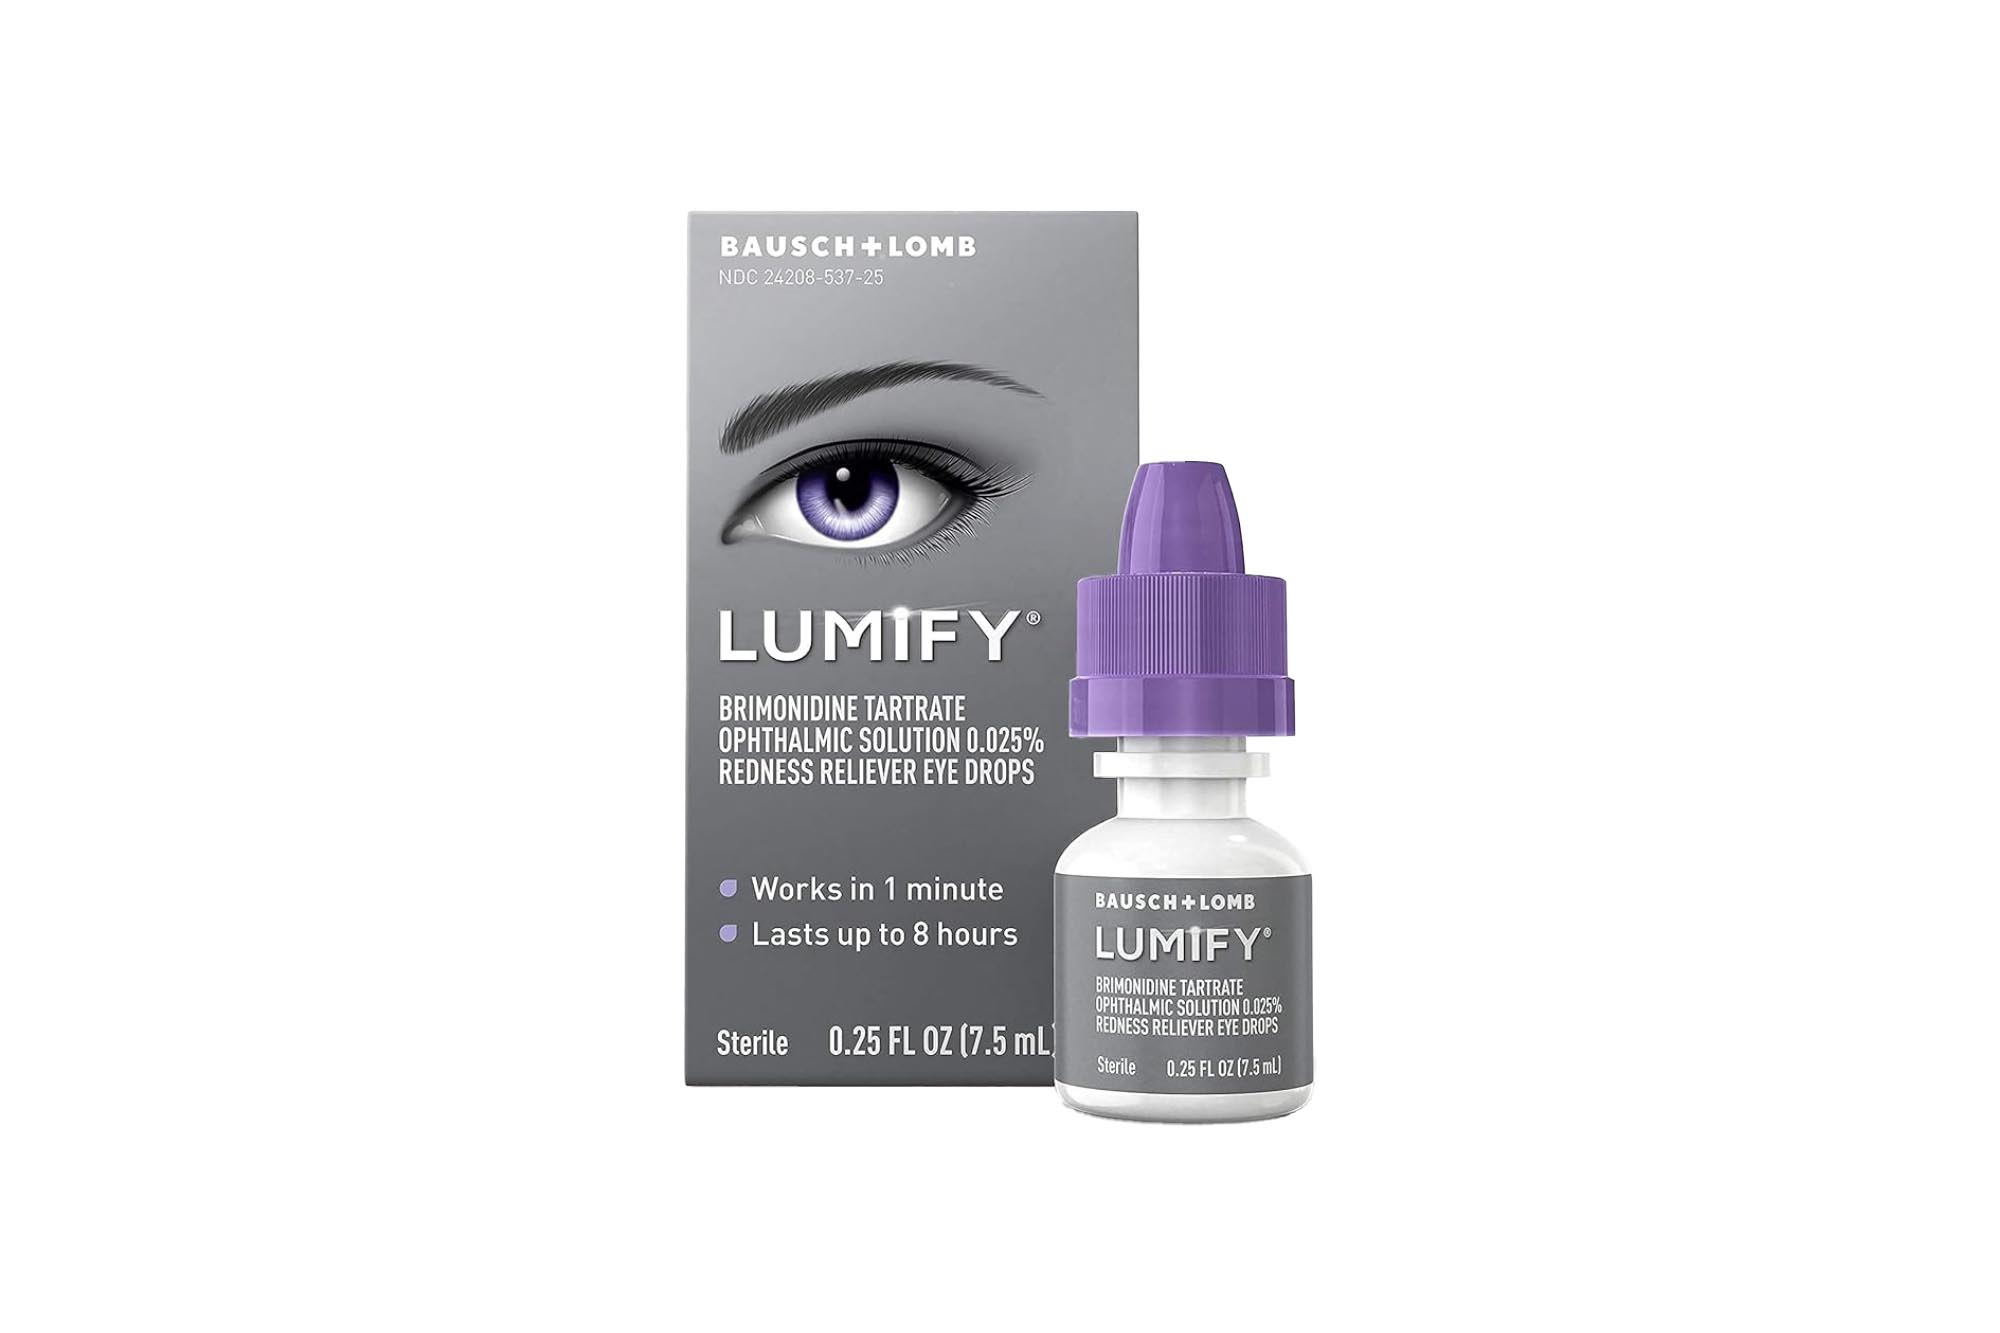 Lumify-Augentropfen